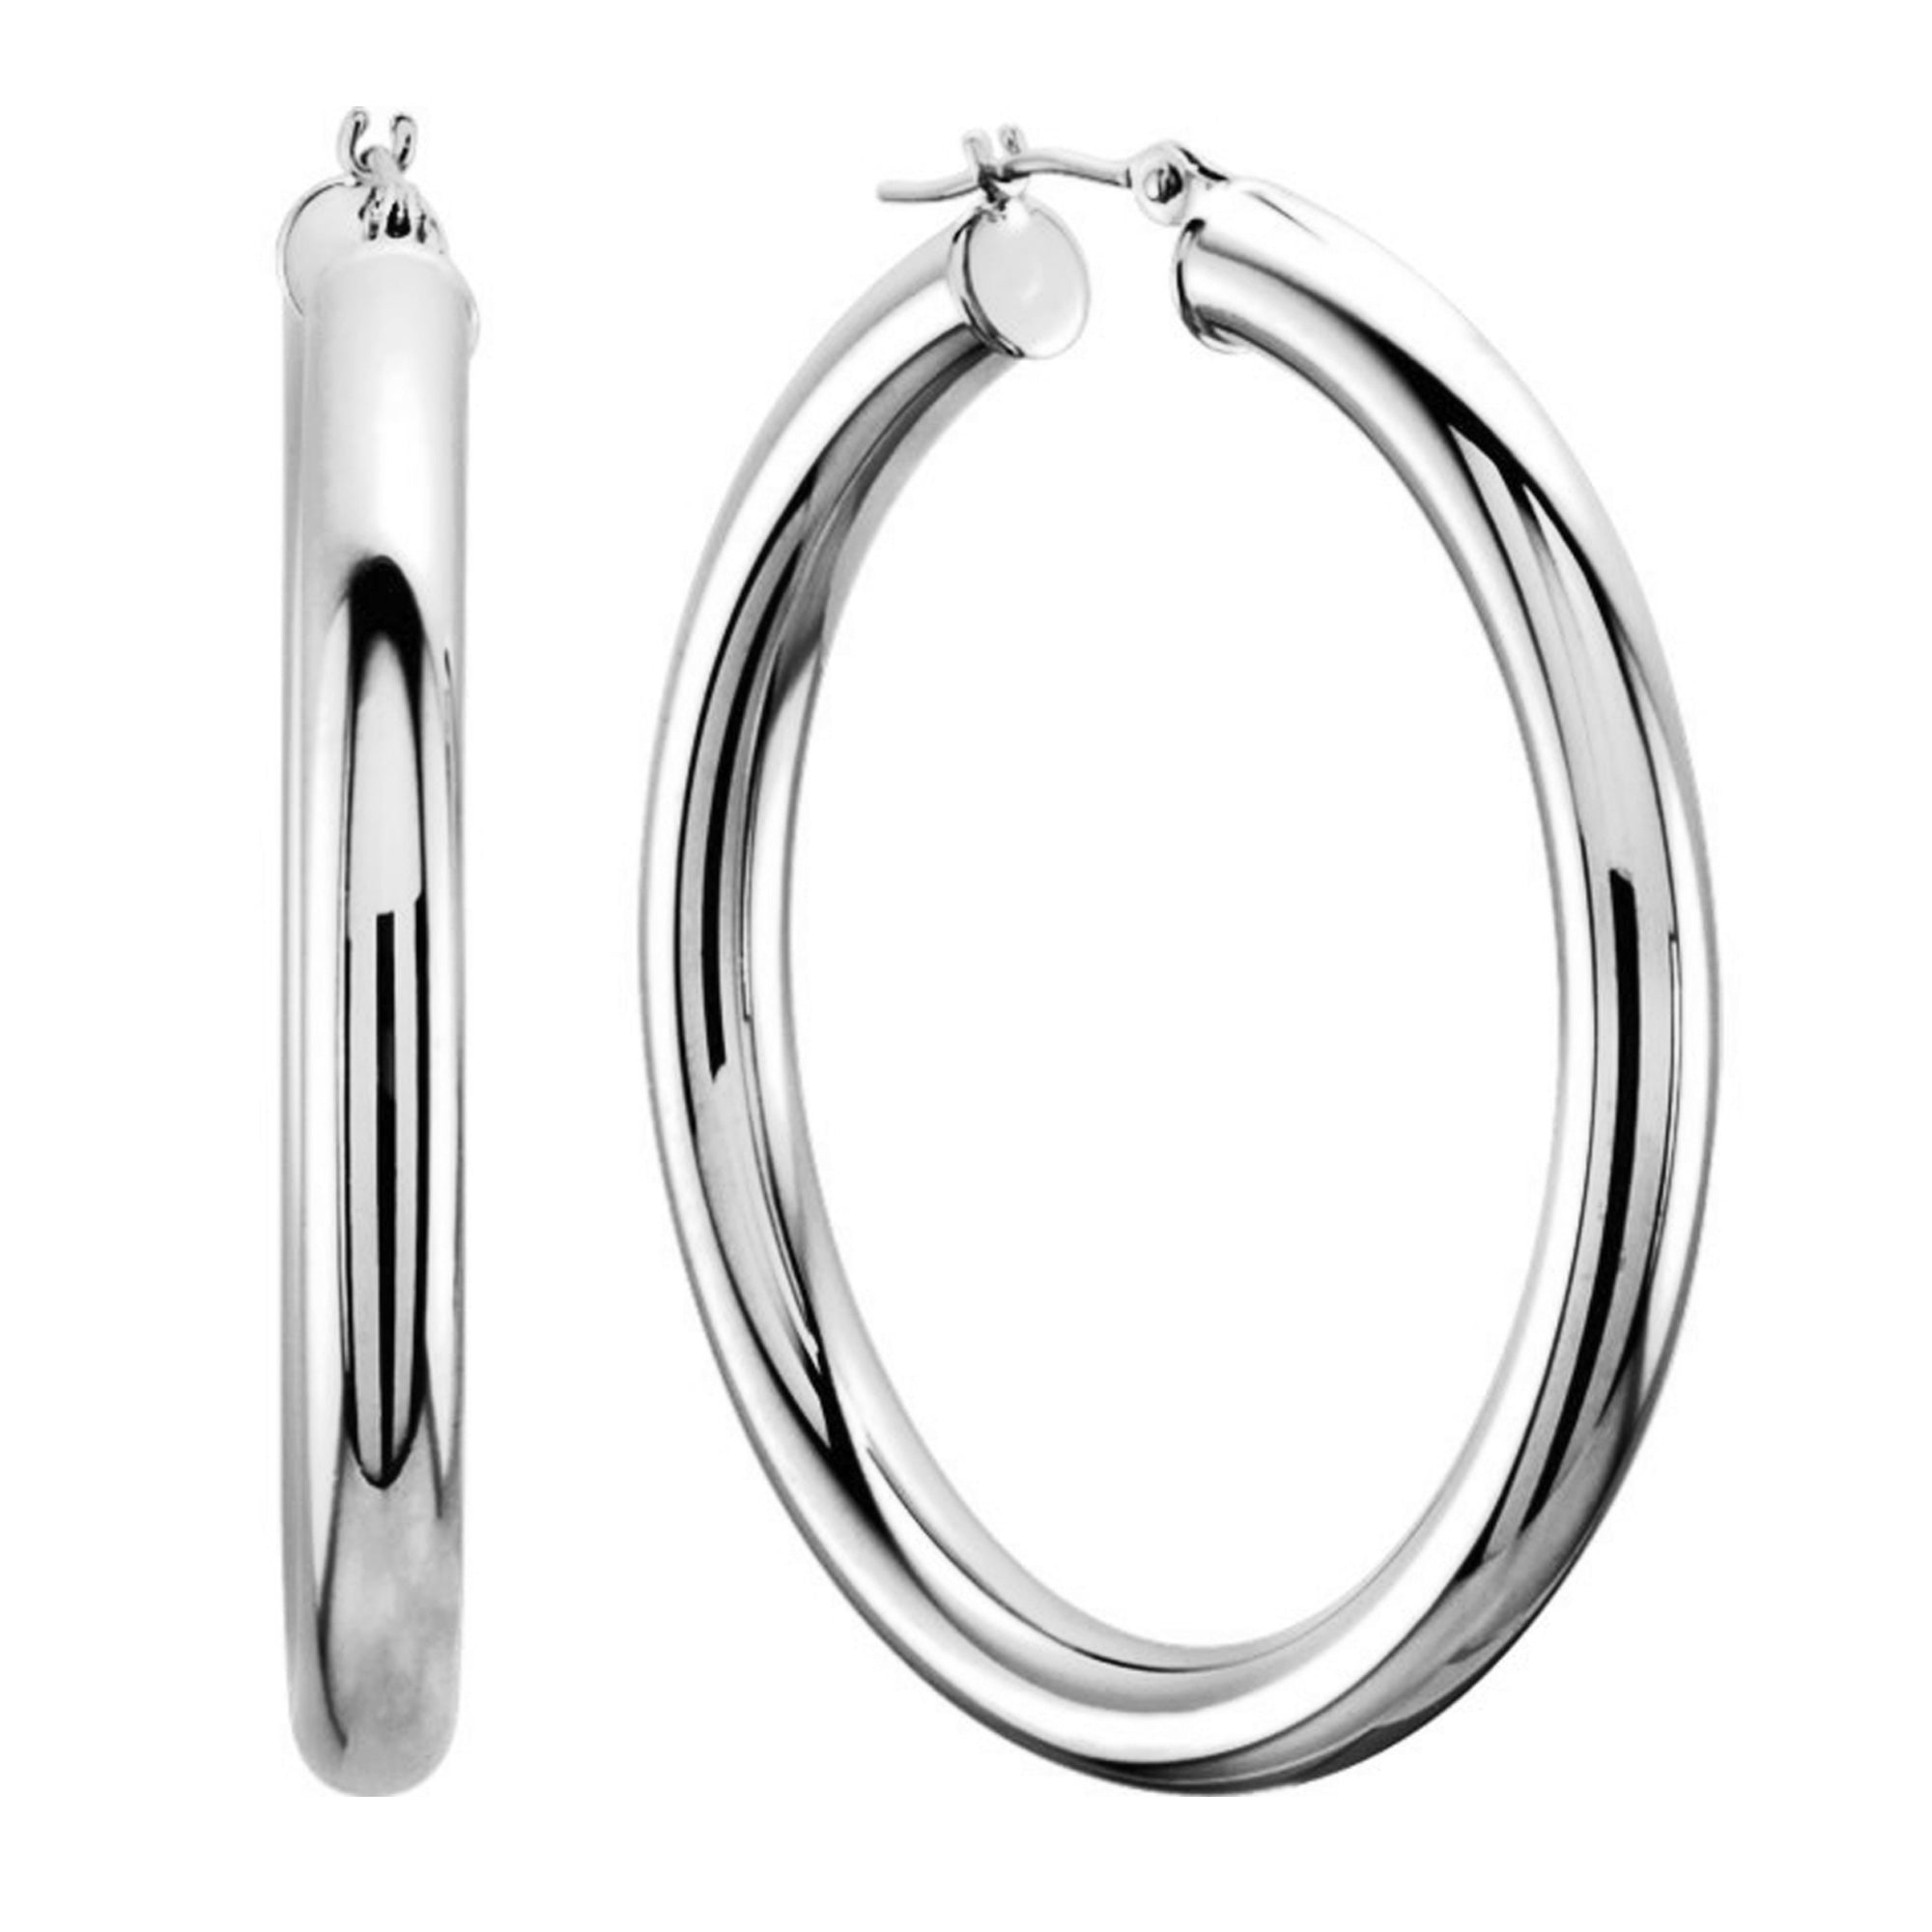 10k hvidguld 3 mm skinnende runde rør bøjle øreringe fine designer smykker til mænd og kvinder